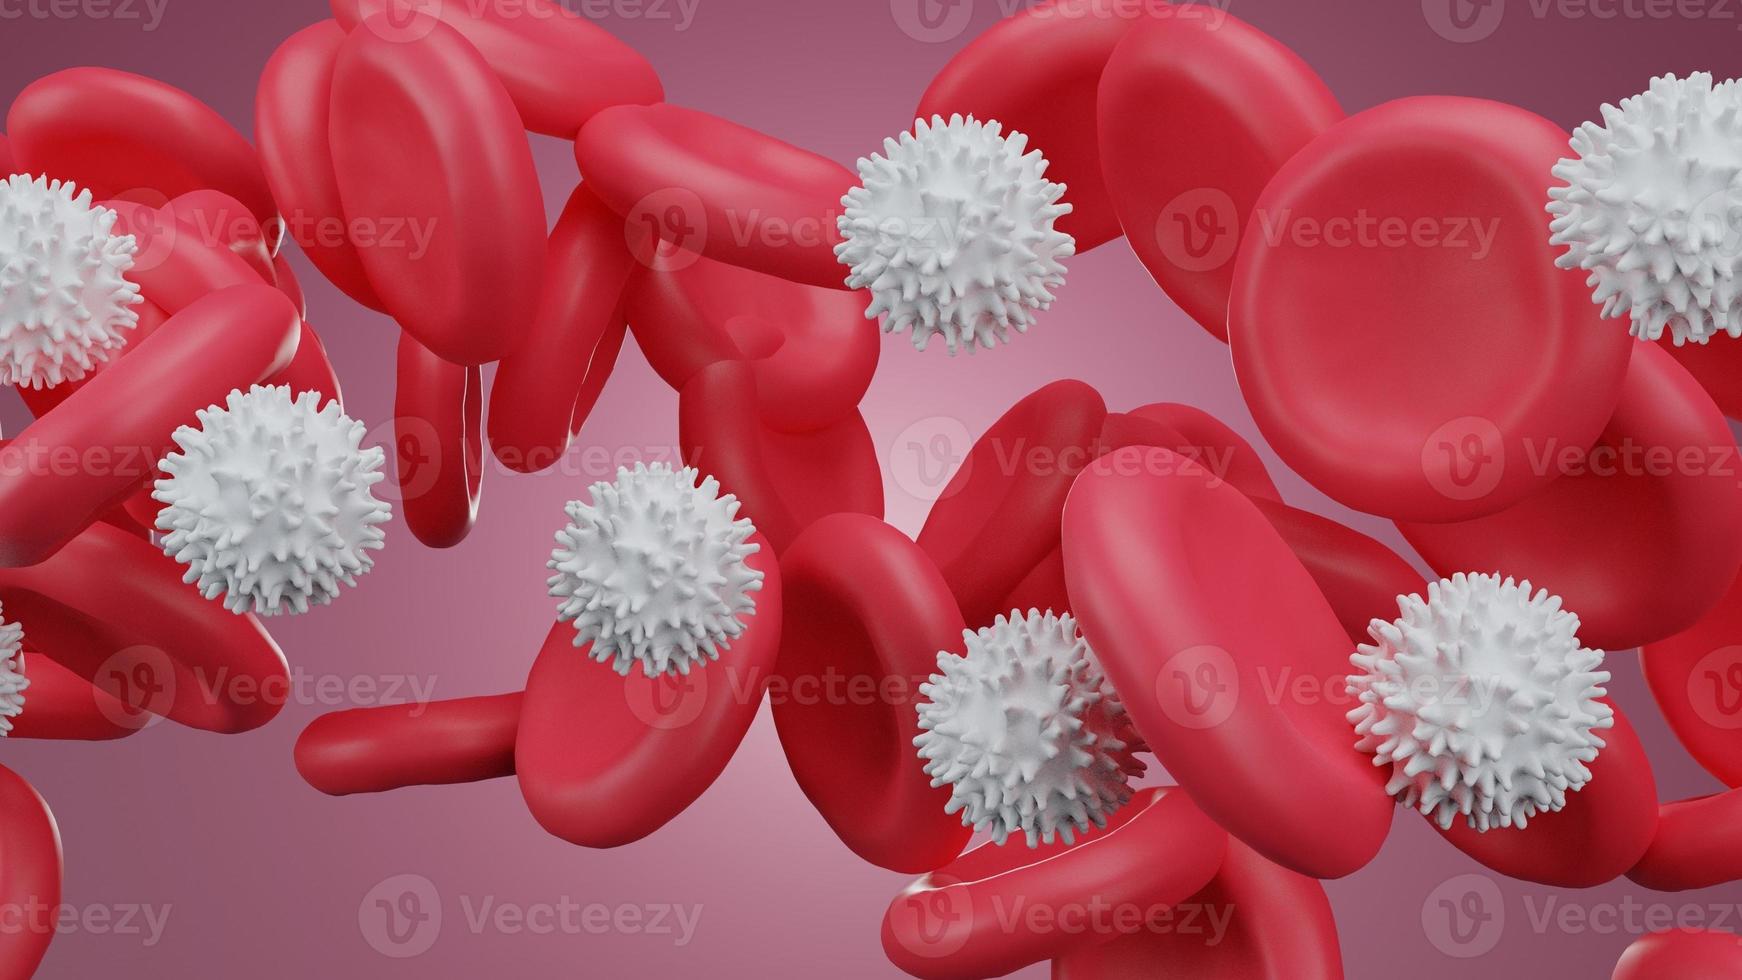 sang rouge et globules blancs dans le sang. la recherche scientifique en médecine et en biologie, les globules rouges dans la veine ou l'artère, circulent à l'intérieur d'un organisme vivant.vu micro.vector illustrer. photo